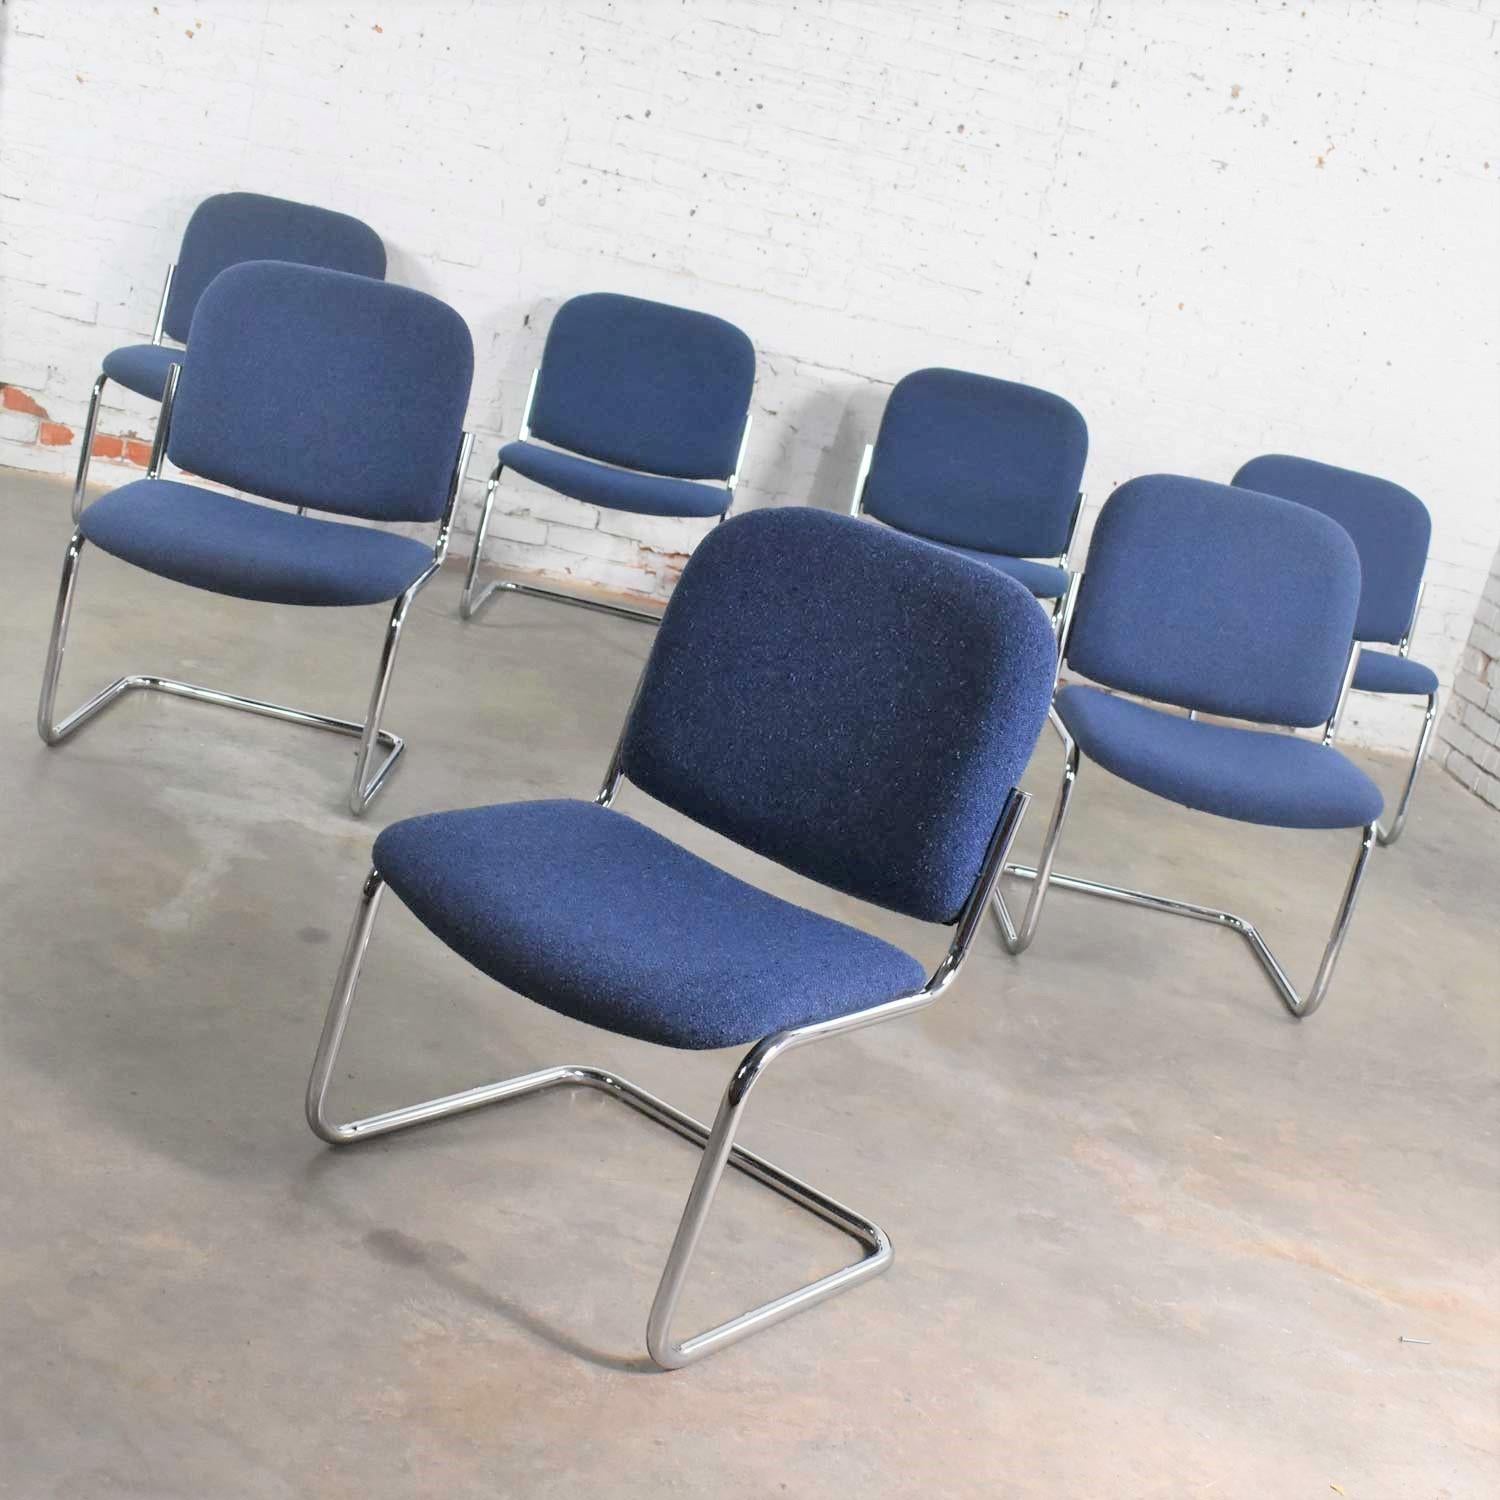 Awesome Vintage Freischwinger rohrförmigen Chrom und blau hopsack Stoff gepolstert Lounge-Stühle in einem Slipper-Stil ohne Arme. Sie sind in der Art von Thonet, dem Cesca-Stuhl und vielen anderen Chromrohr-Freischwingern der Bauhaus-Ära. Es ist ein